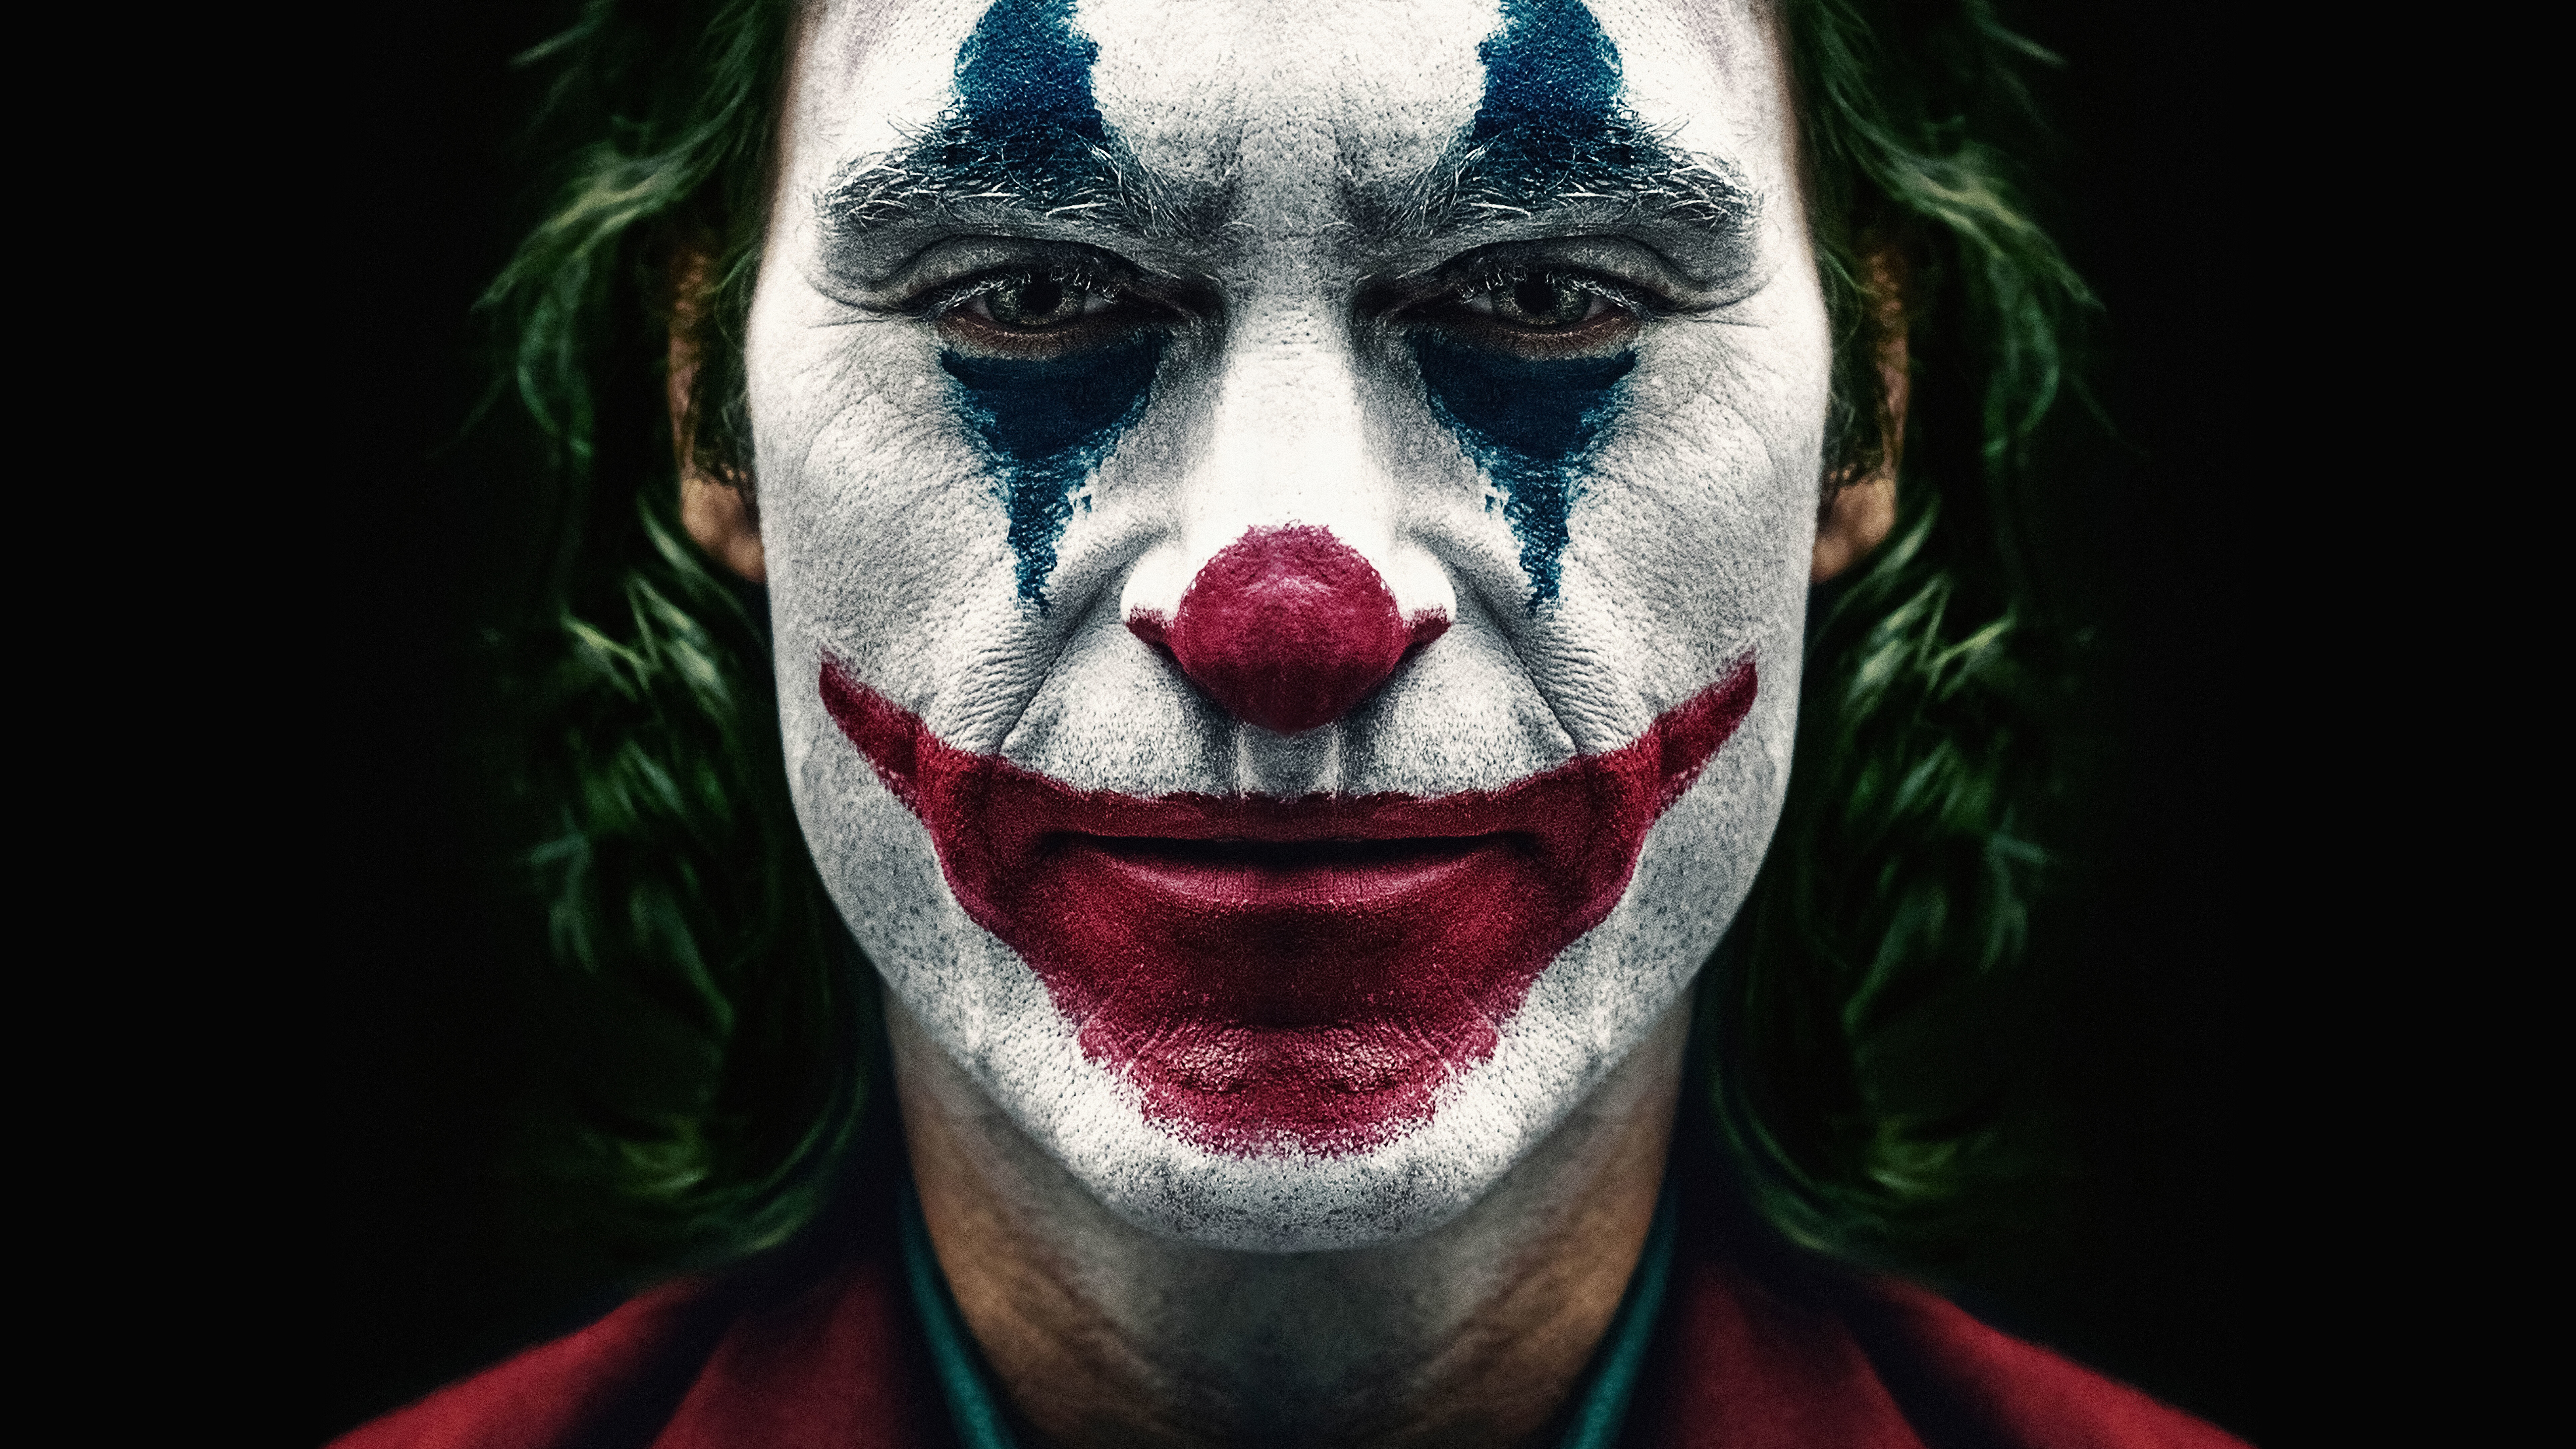 Movies Joaquin Phoenix Joker Joker 2019 Movie Men Looking At Viewer Clown Face Green Hair DC Comics  7680x4320